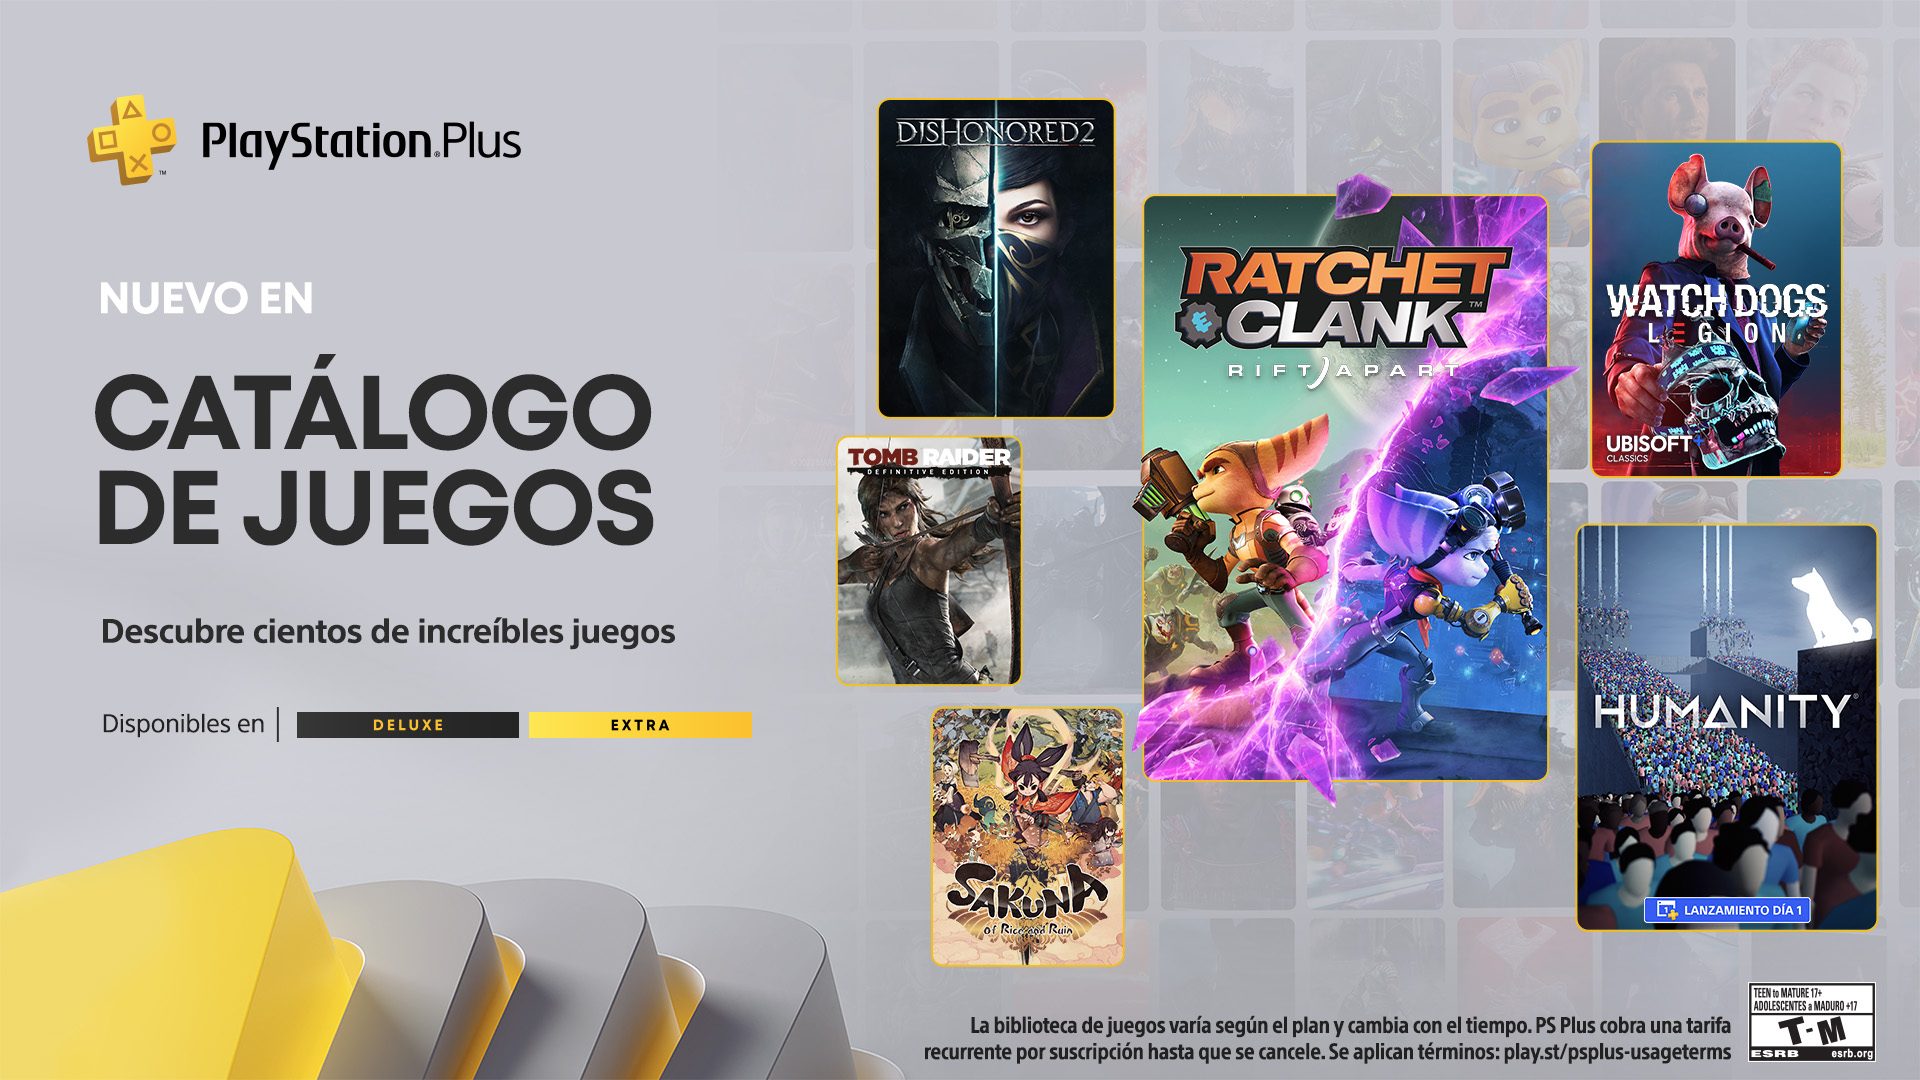 Playstation Legends - Revive y colecciona los mejores juegos de las  legendarias PlayStation (PSone,PS1,PSX,PS2) (todos los juego de las  consolas). Ventas personales en la ciudad de Quito, puede arreglarse envíos  a otras